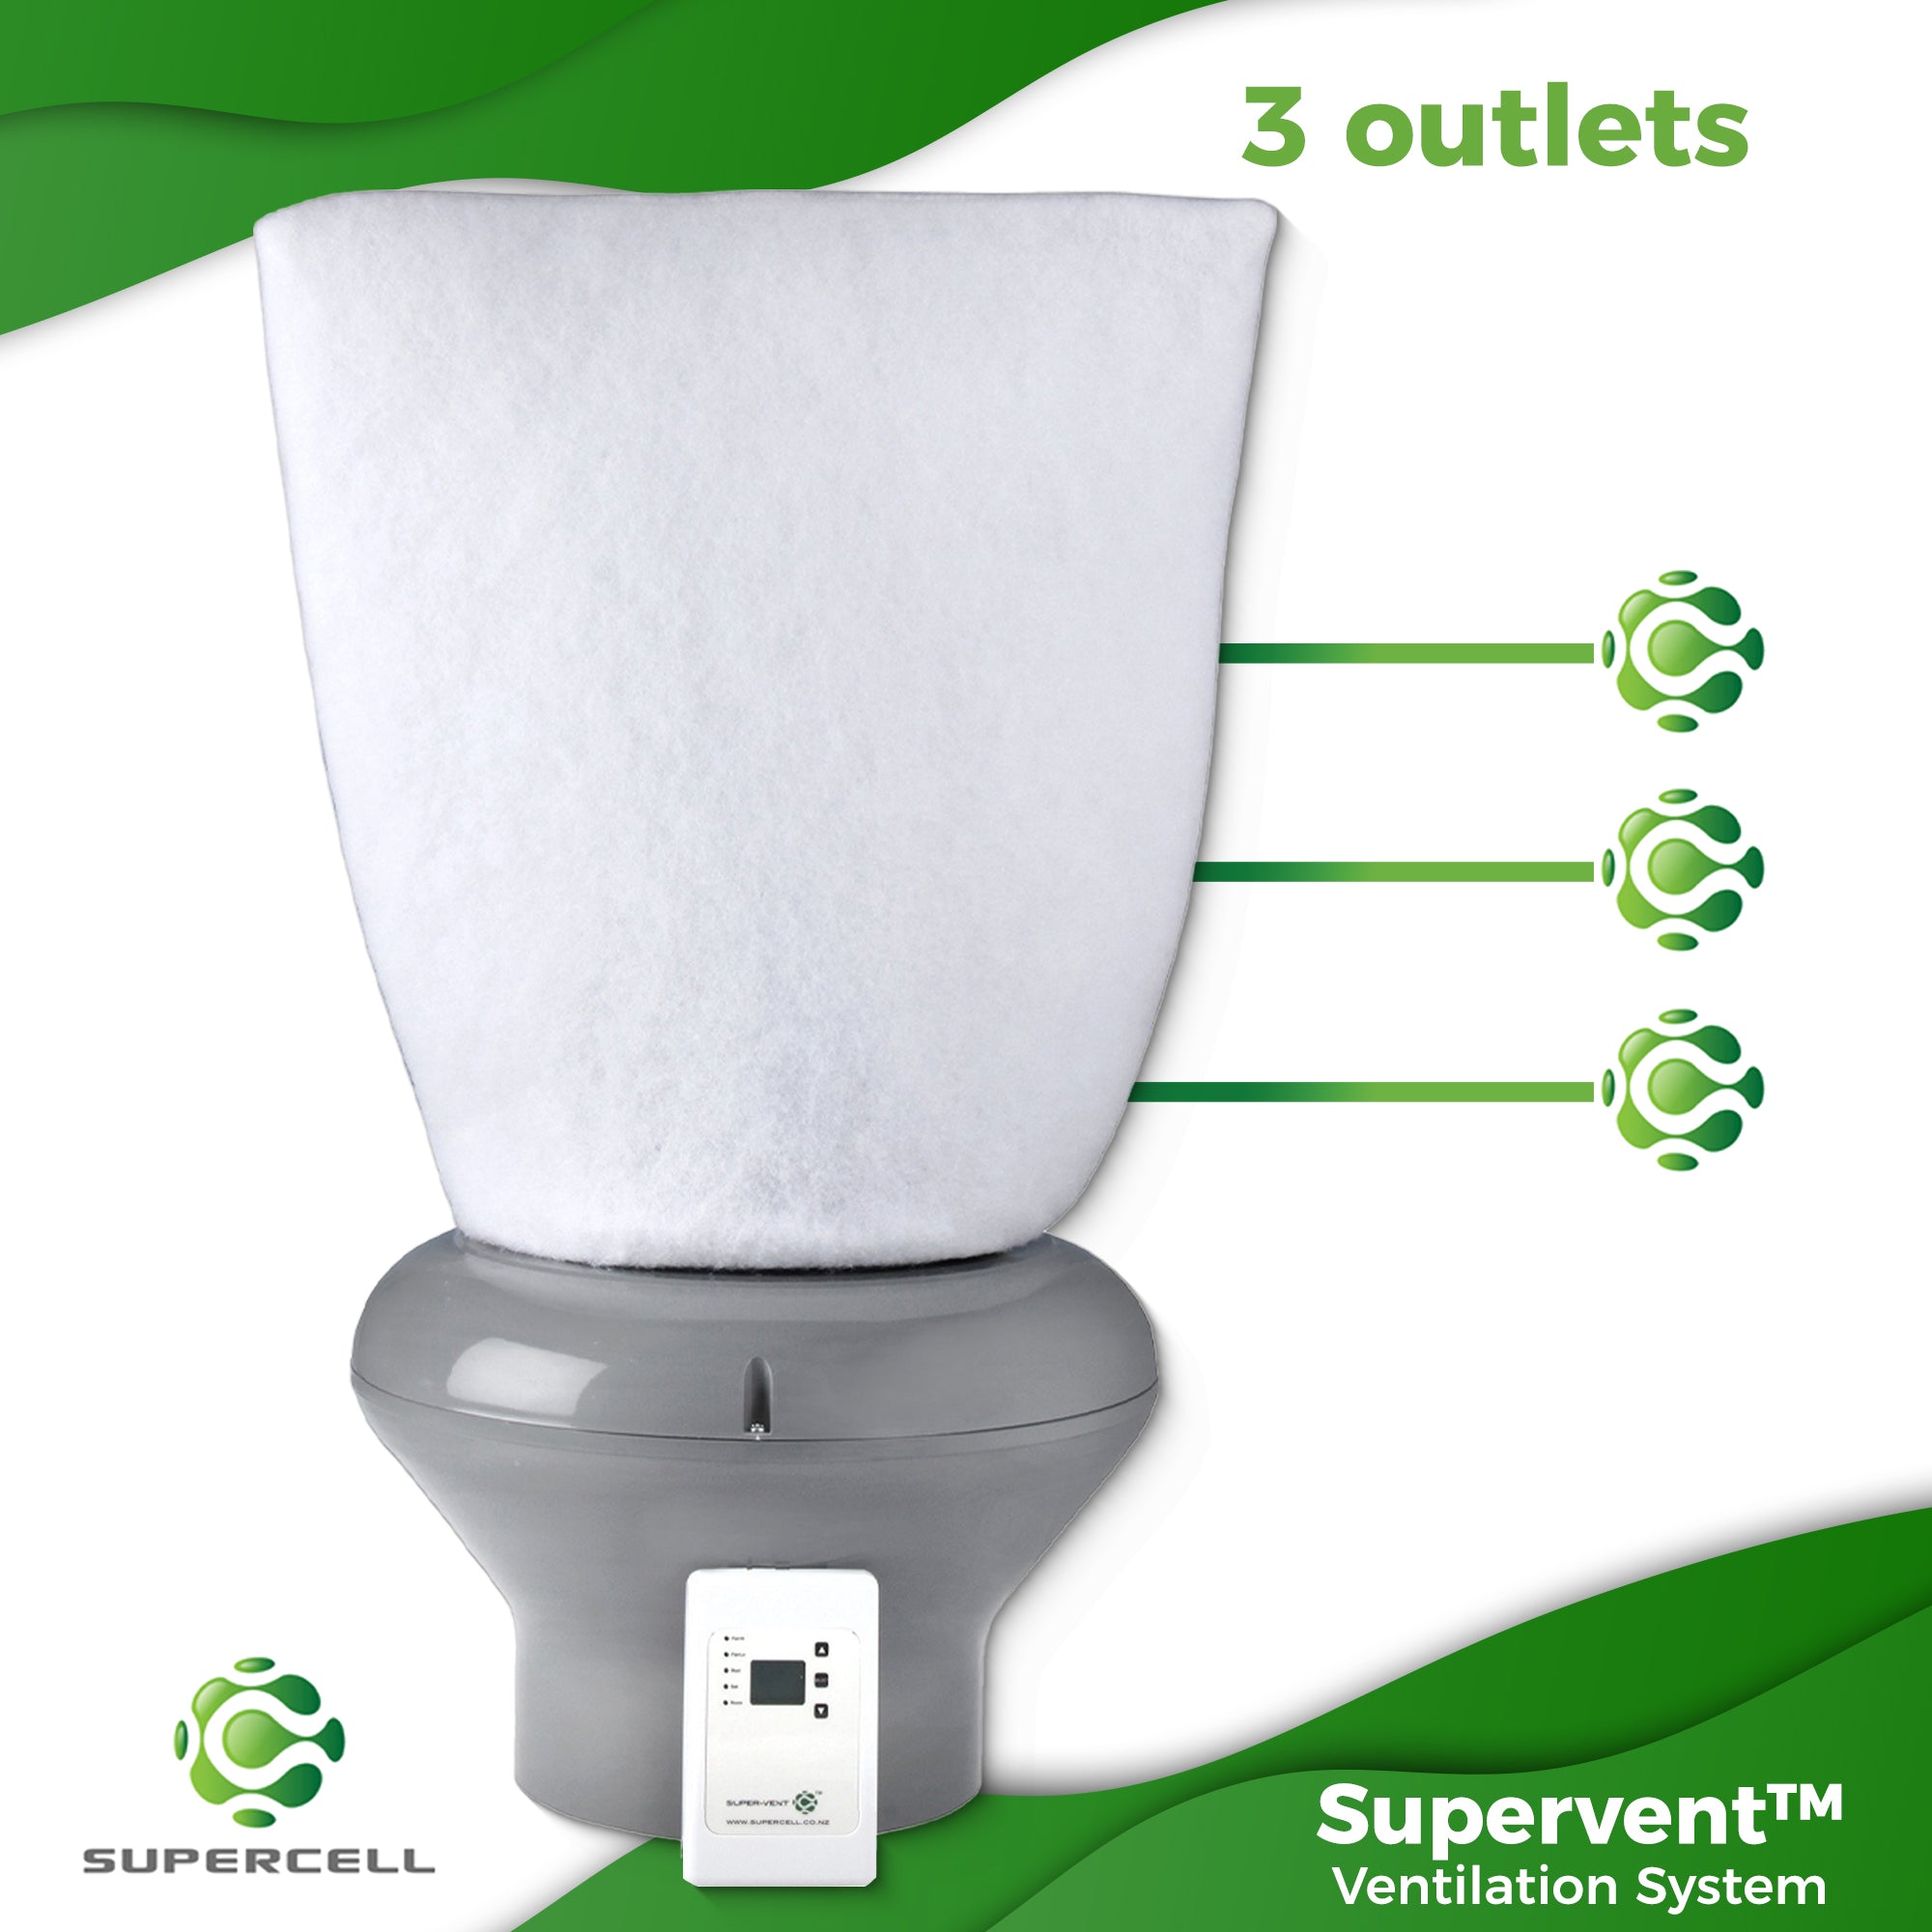 Supervent™ Ventilation System 3 outlets - supercellnz